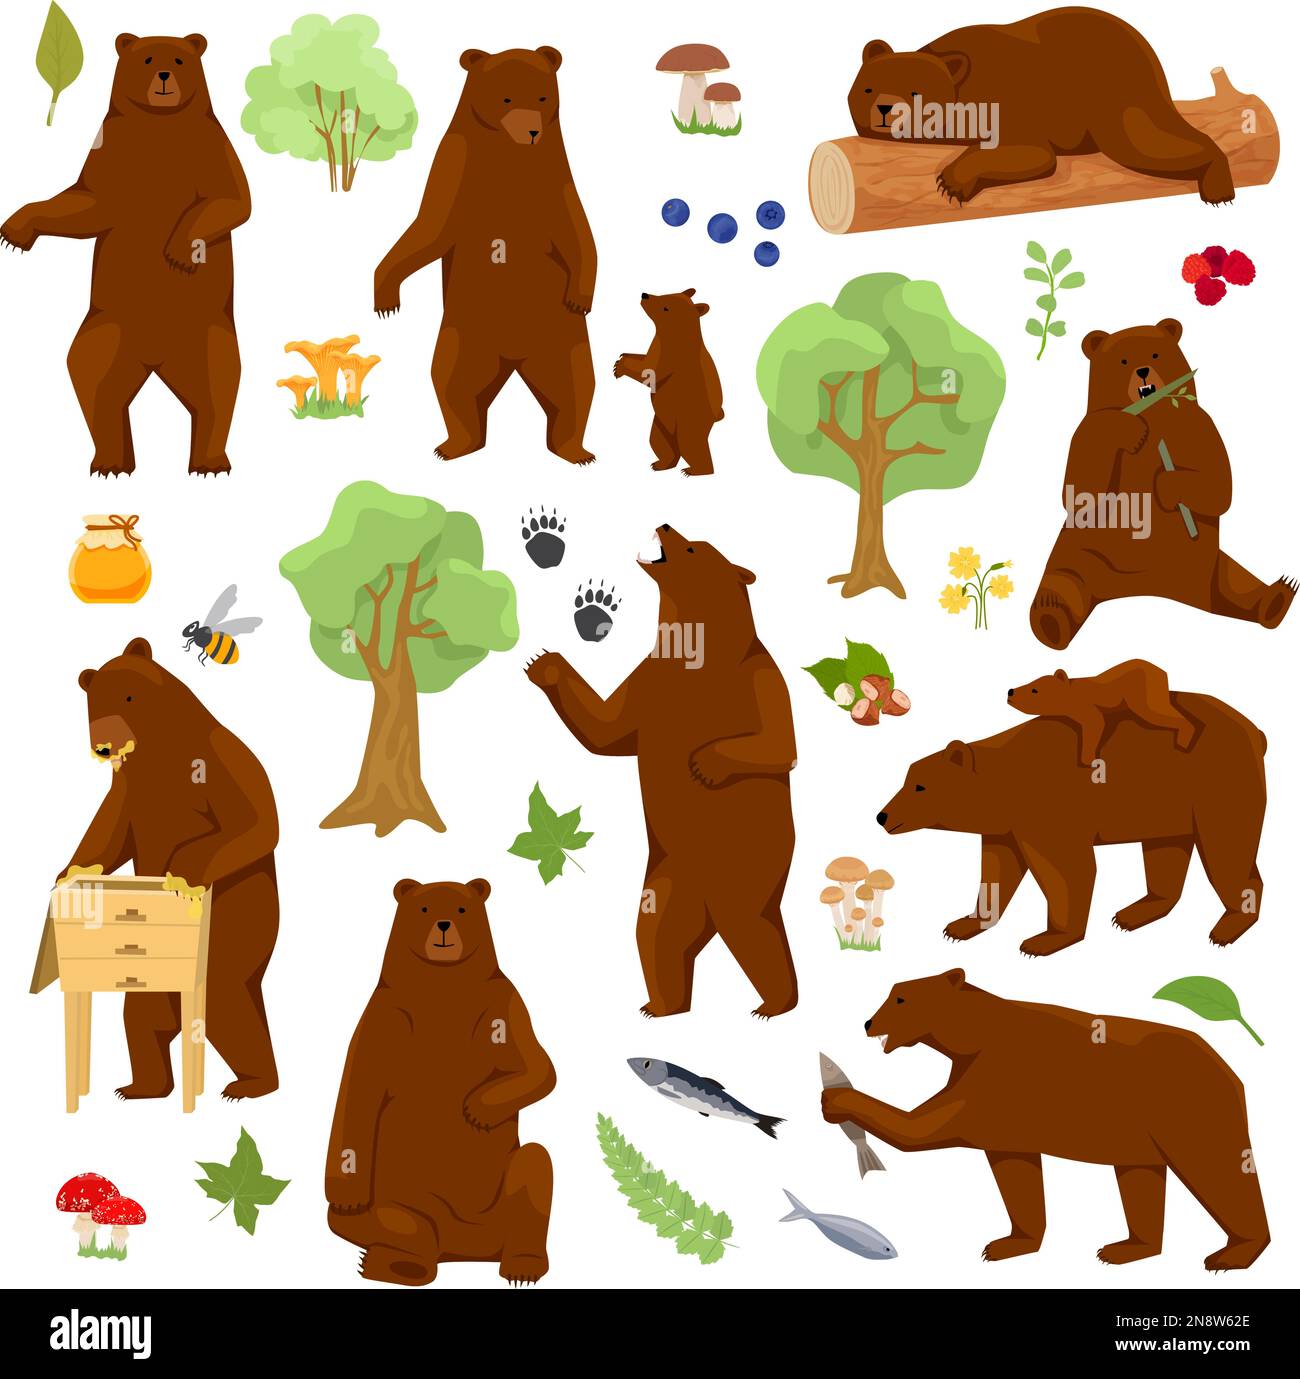 Ein flaches Set aus Grizzlybären mit isolierten Bildern von Wald- und Cartoon-Bären, die sich wie Menschen verhalten Stock Vektor